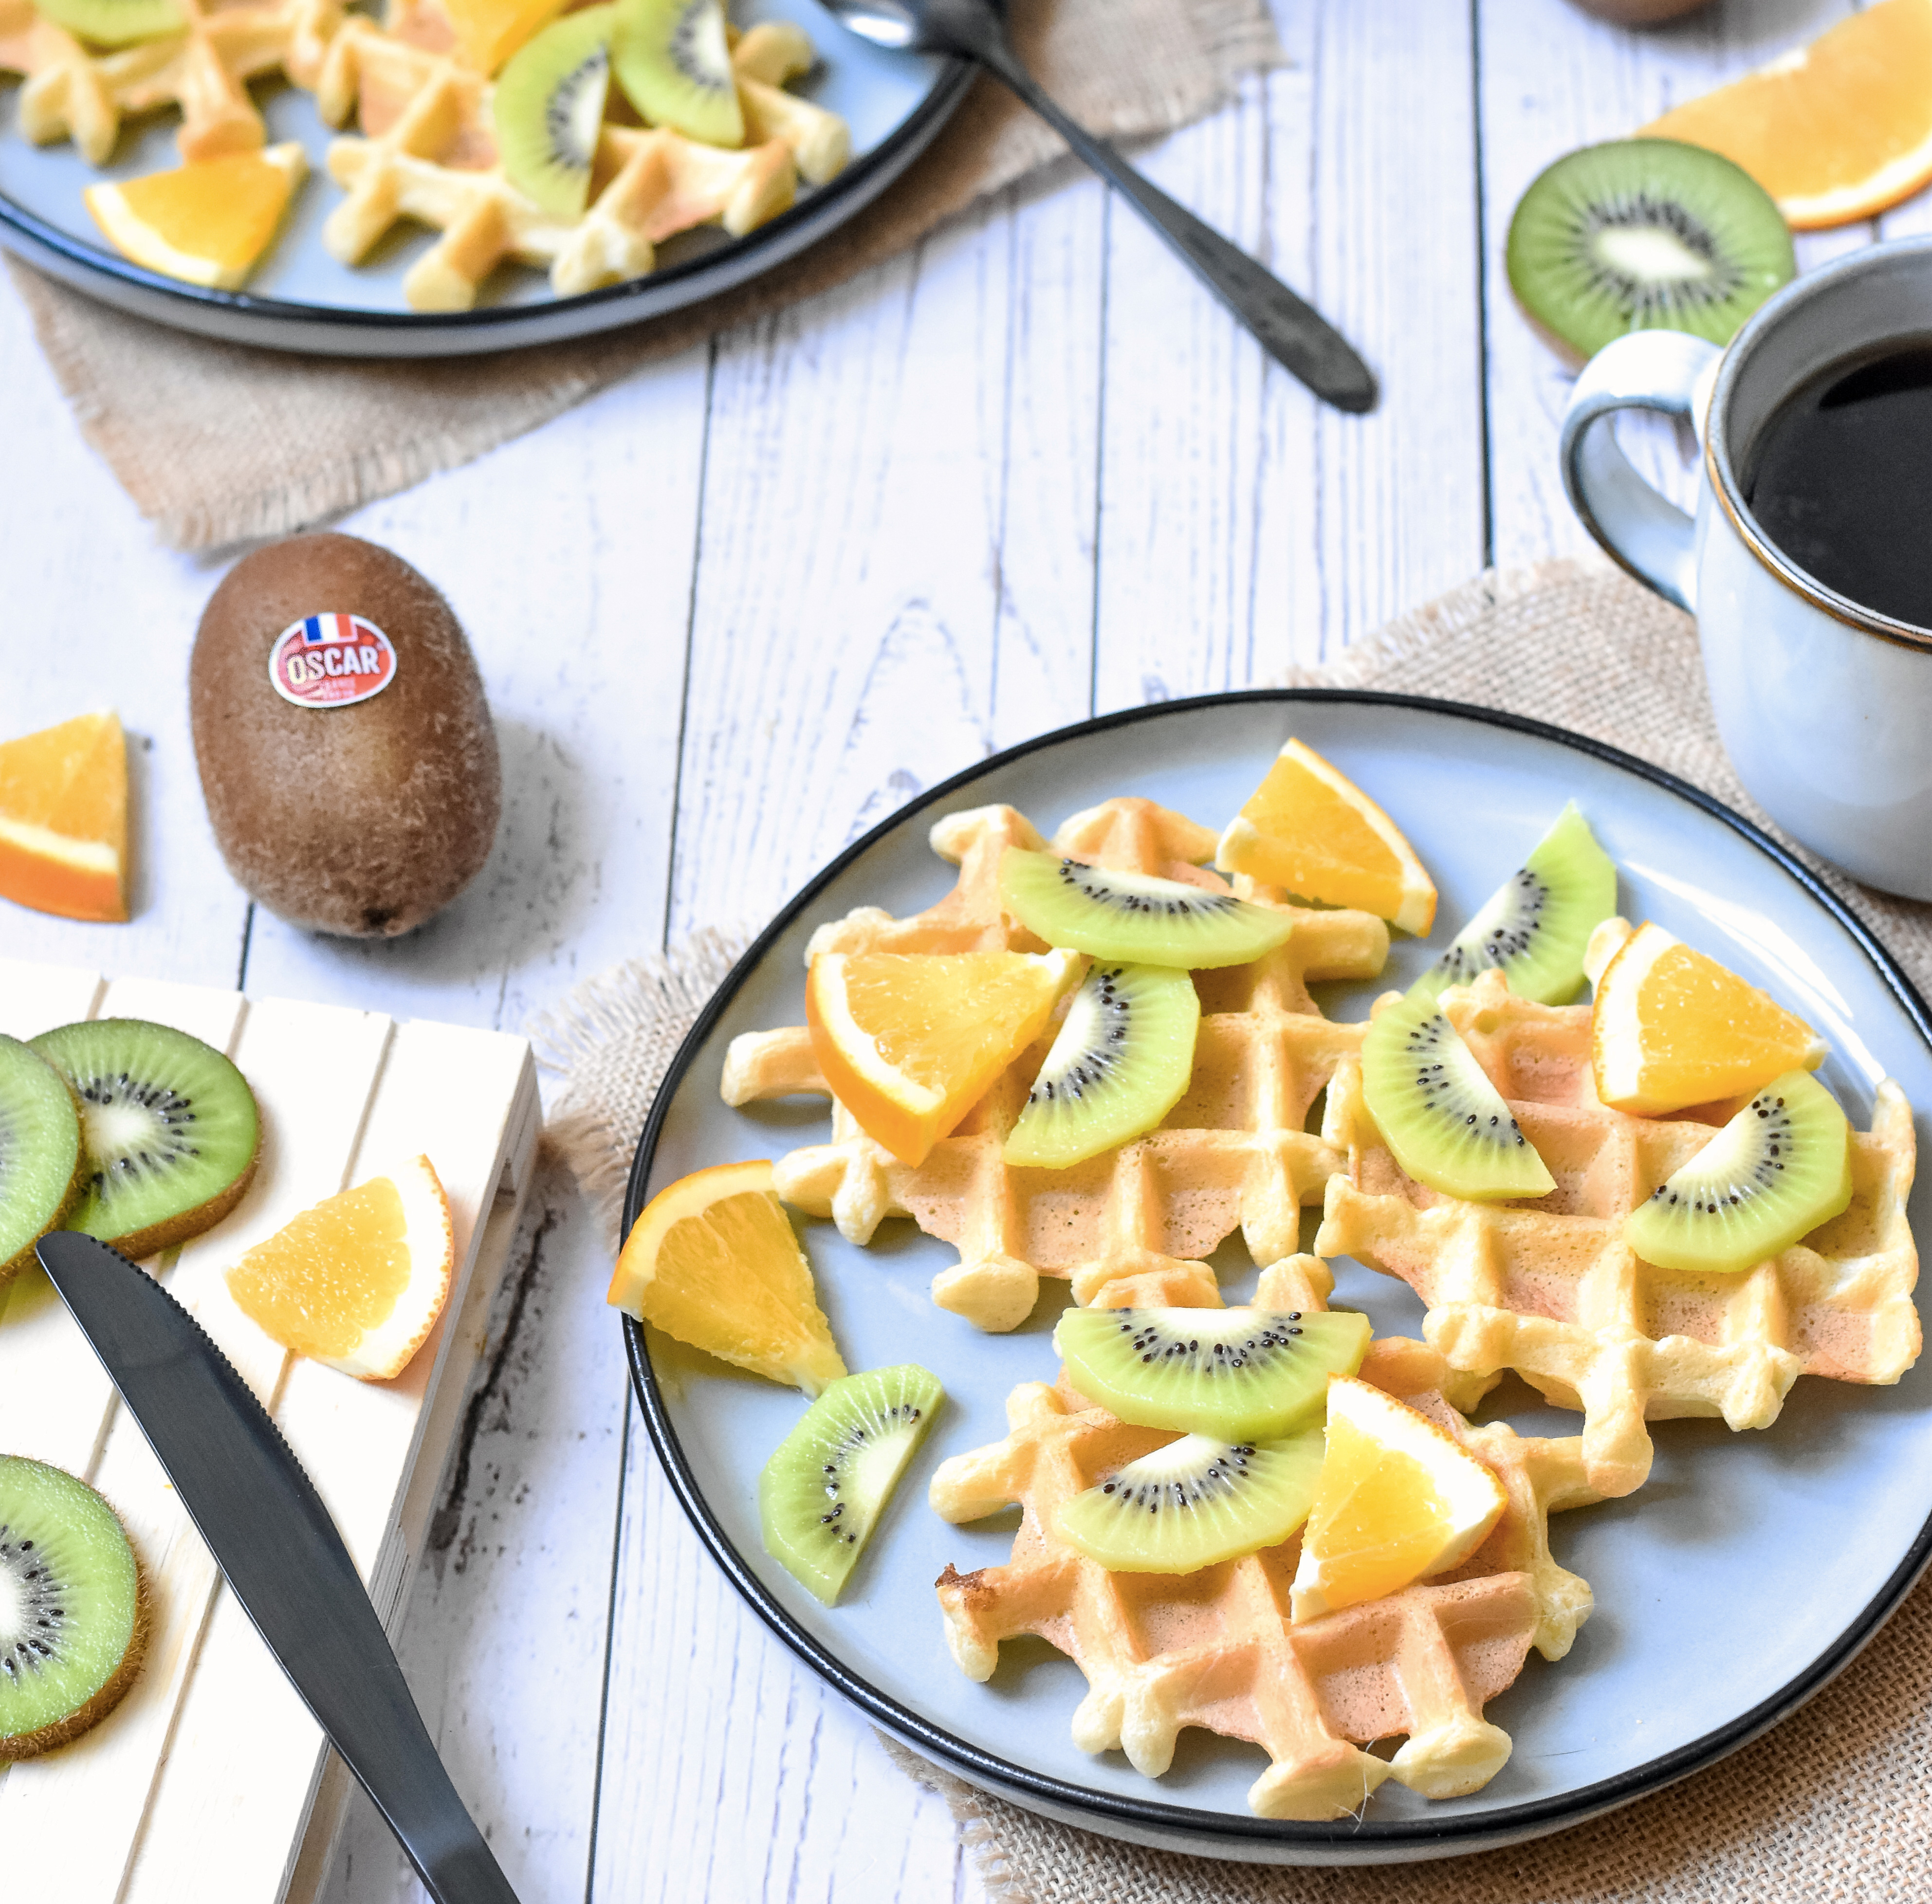 Light waffles with Oscar kiwi and orange